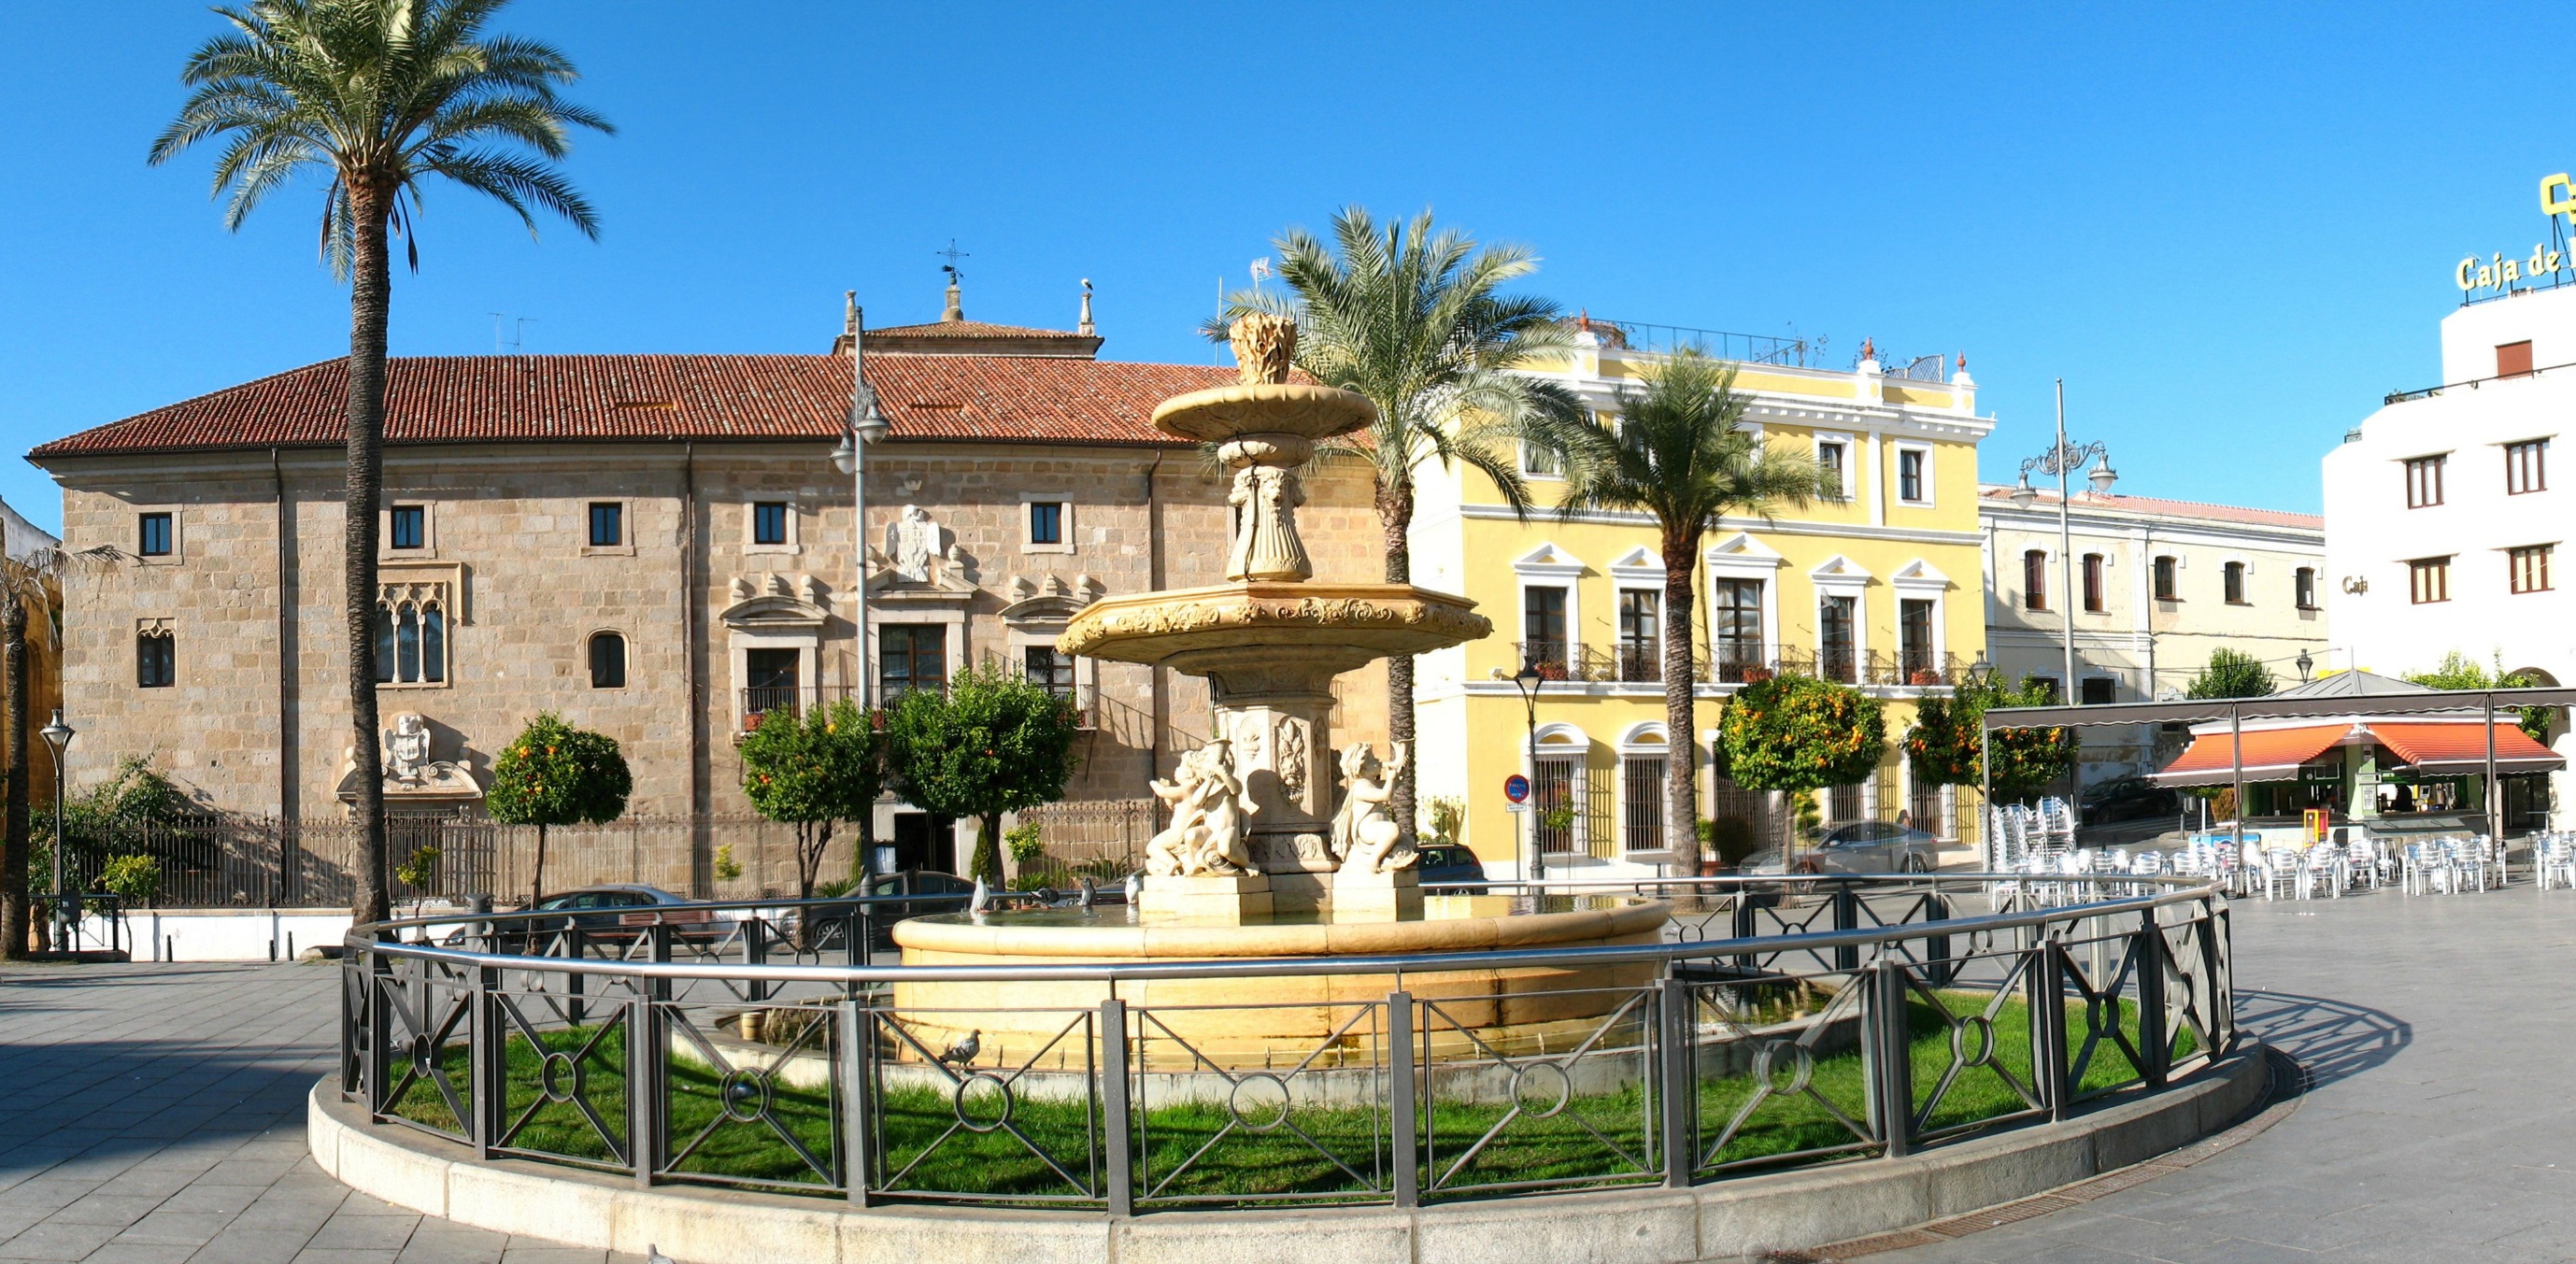 Plaza Espana Merida